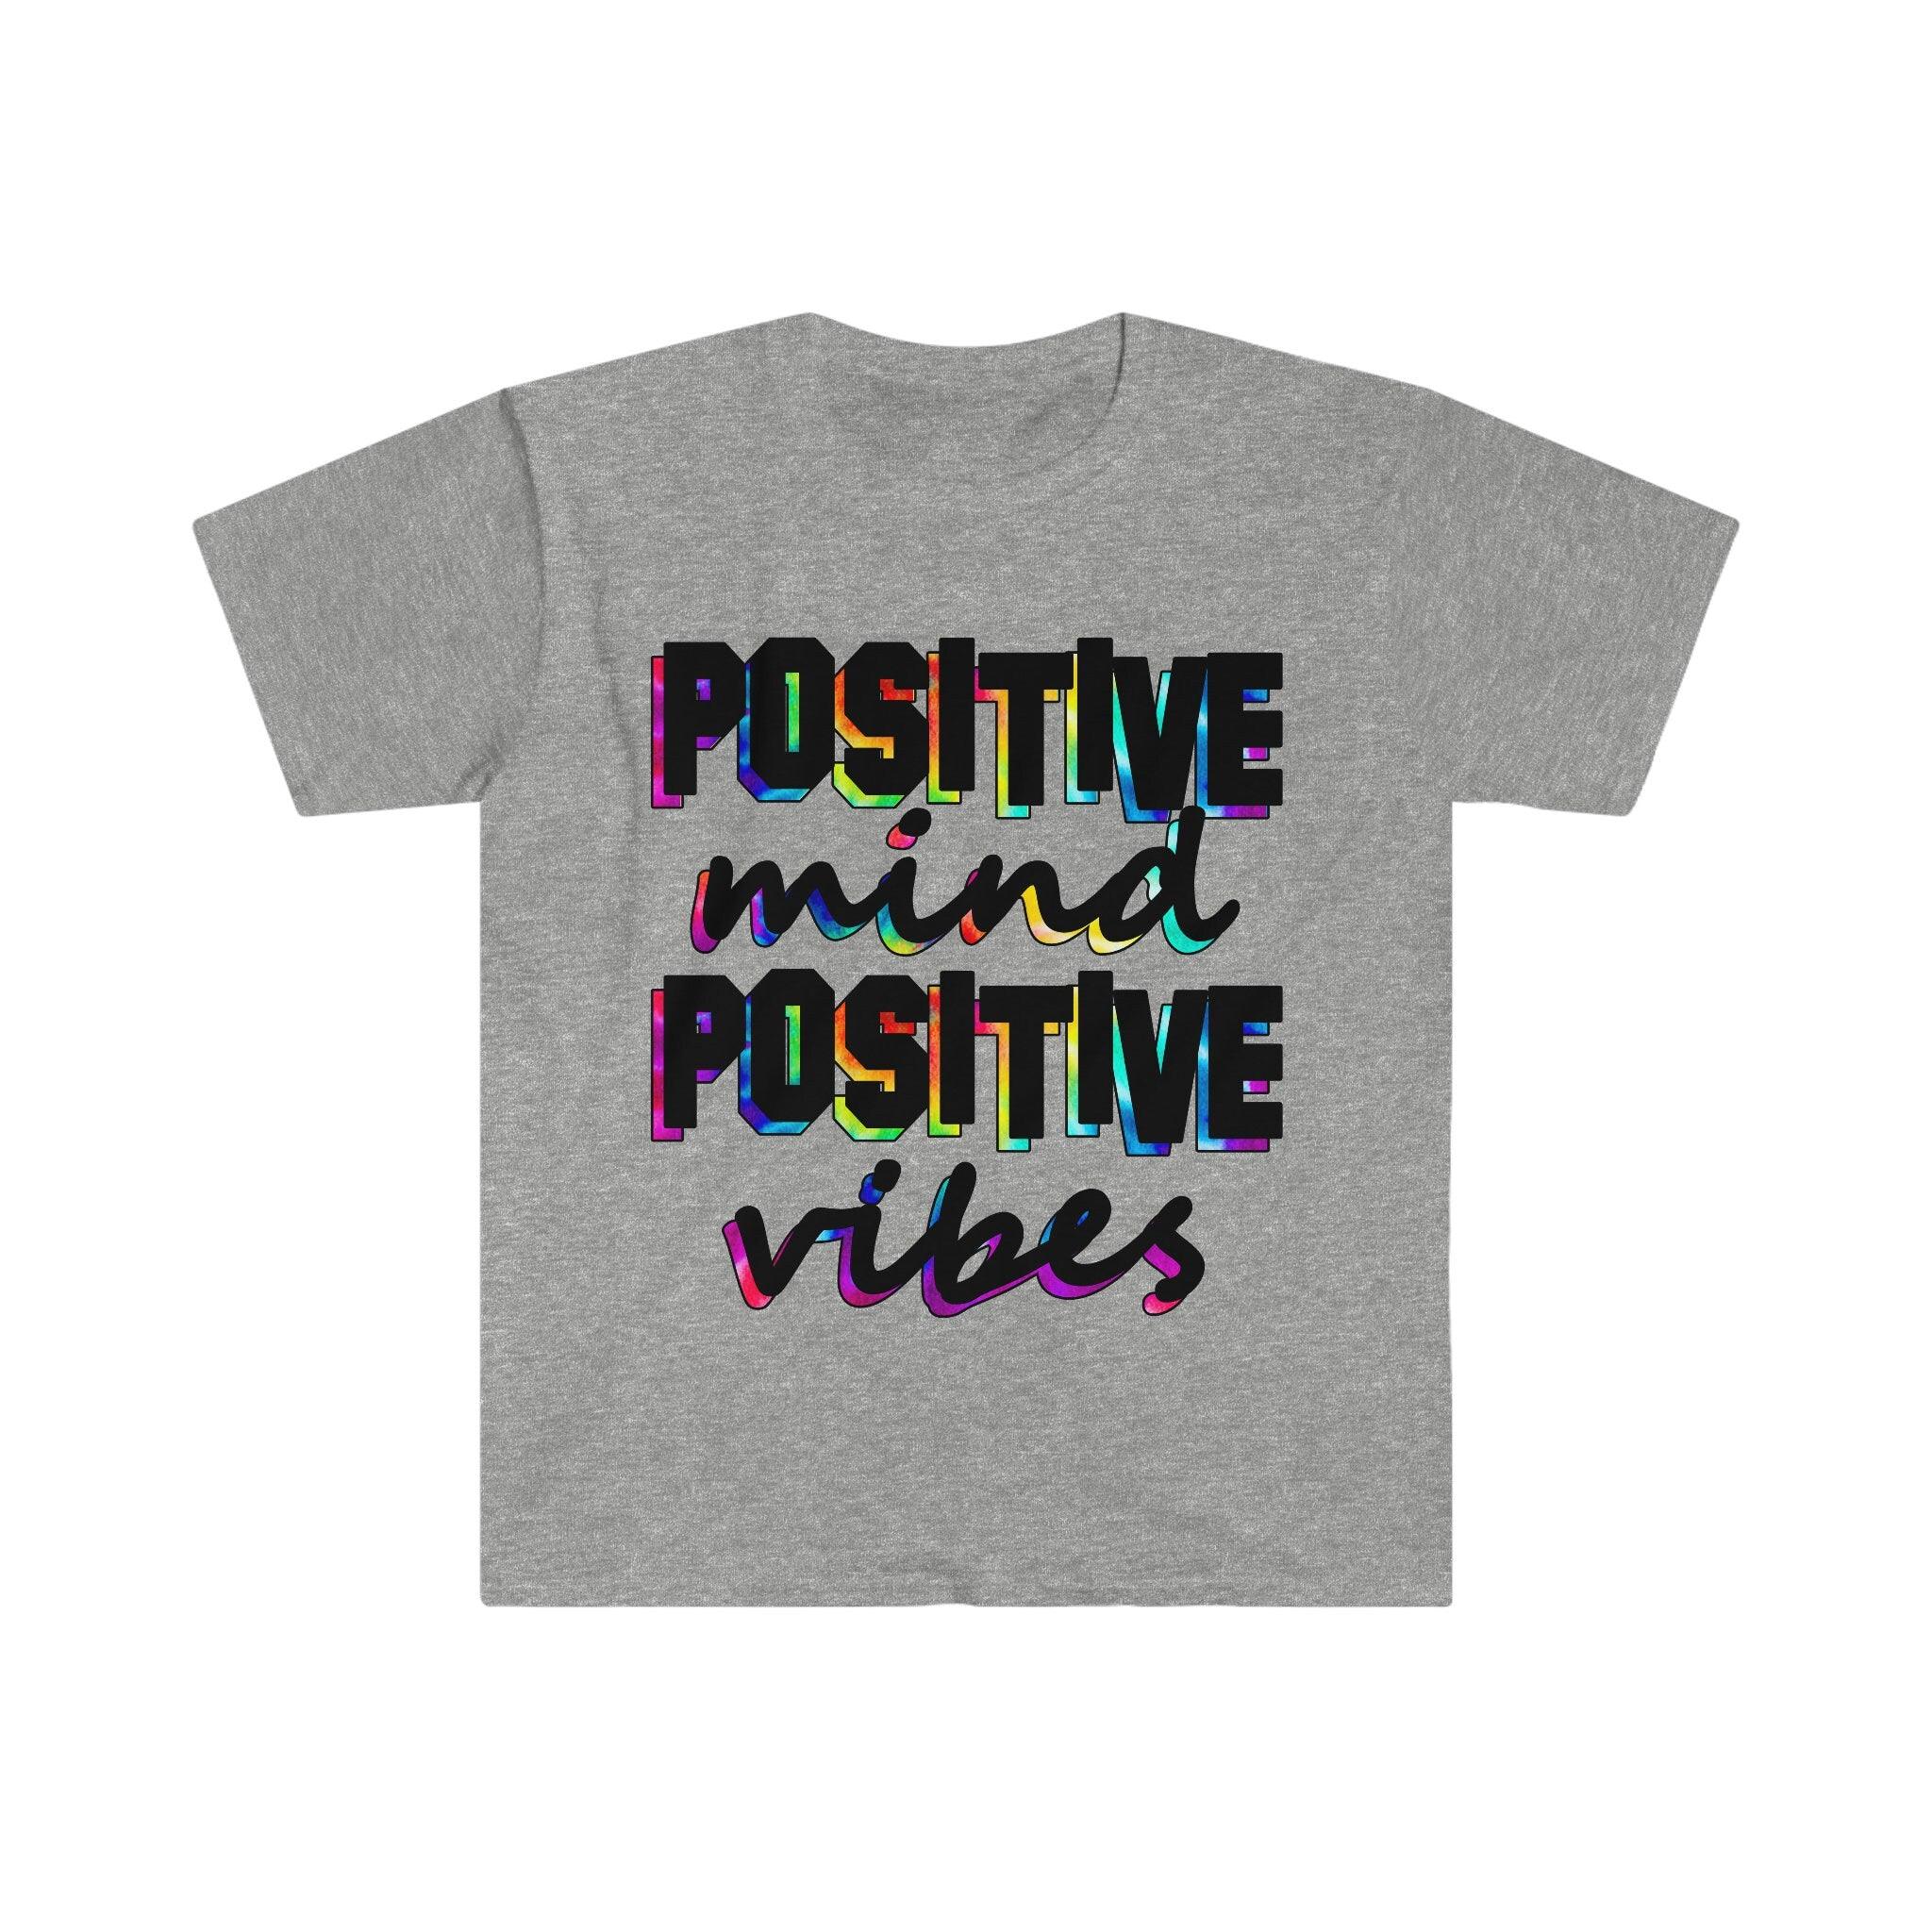 Maglietta Positive Mind Positive Vibes, camicia motivazionale, camicia ispiratrice, maglietta positività - plusminusco.com